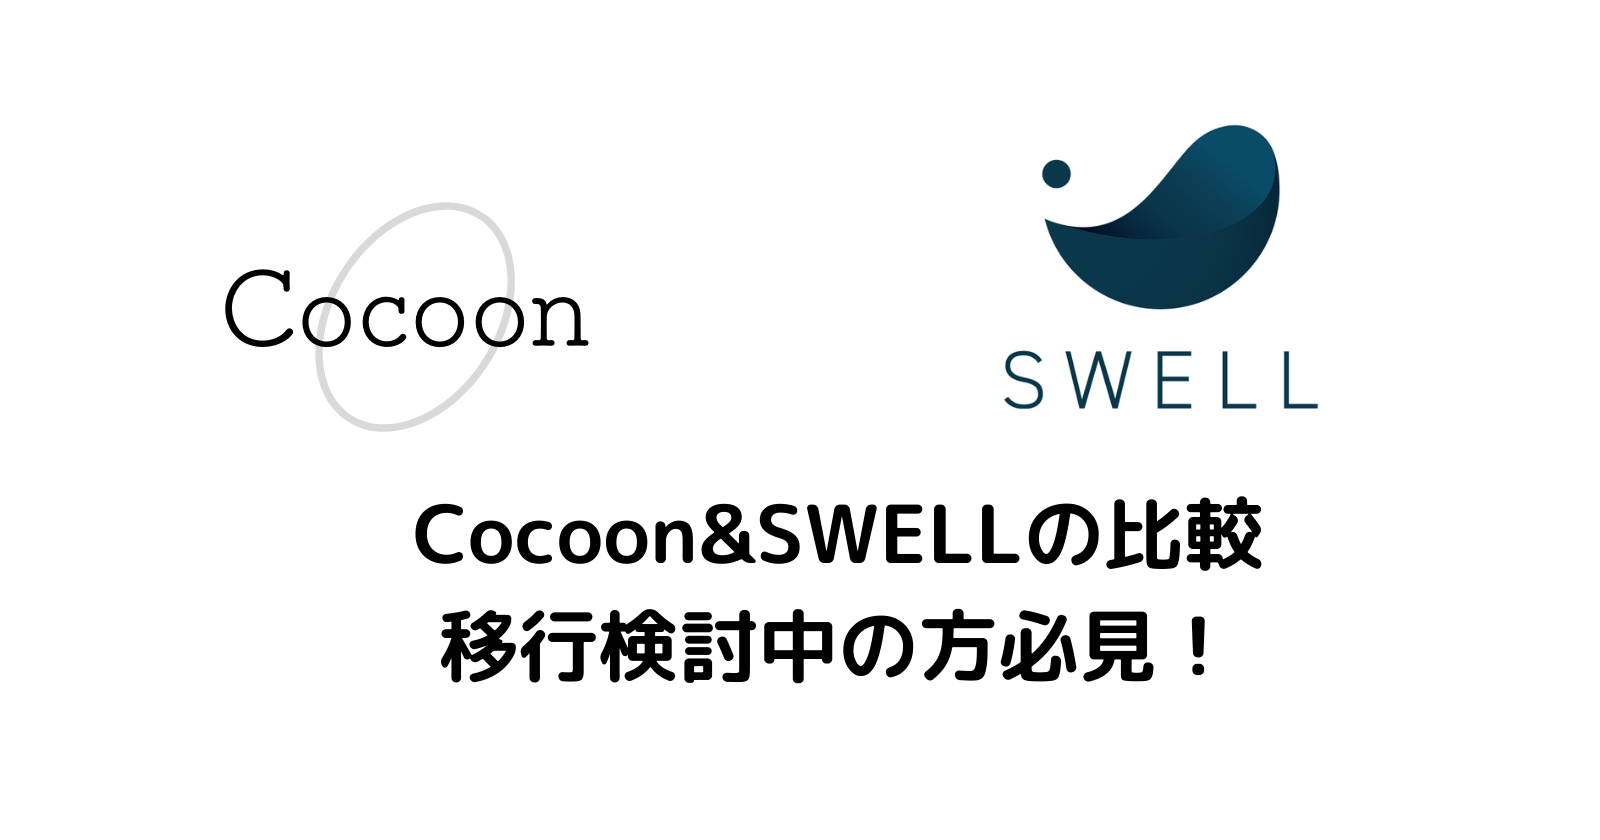 【感想】Cocoon&SWELLの比較。移行検討中の方に分かりやすく